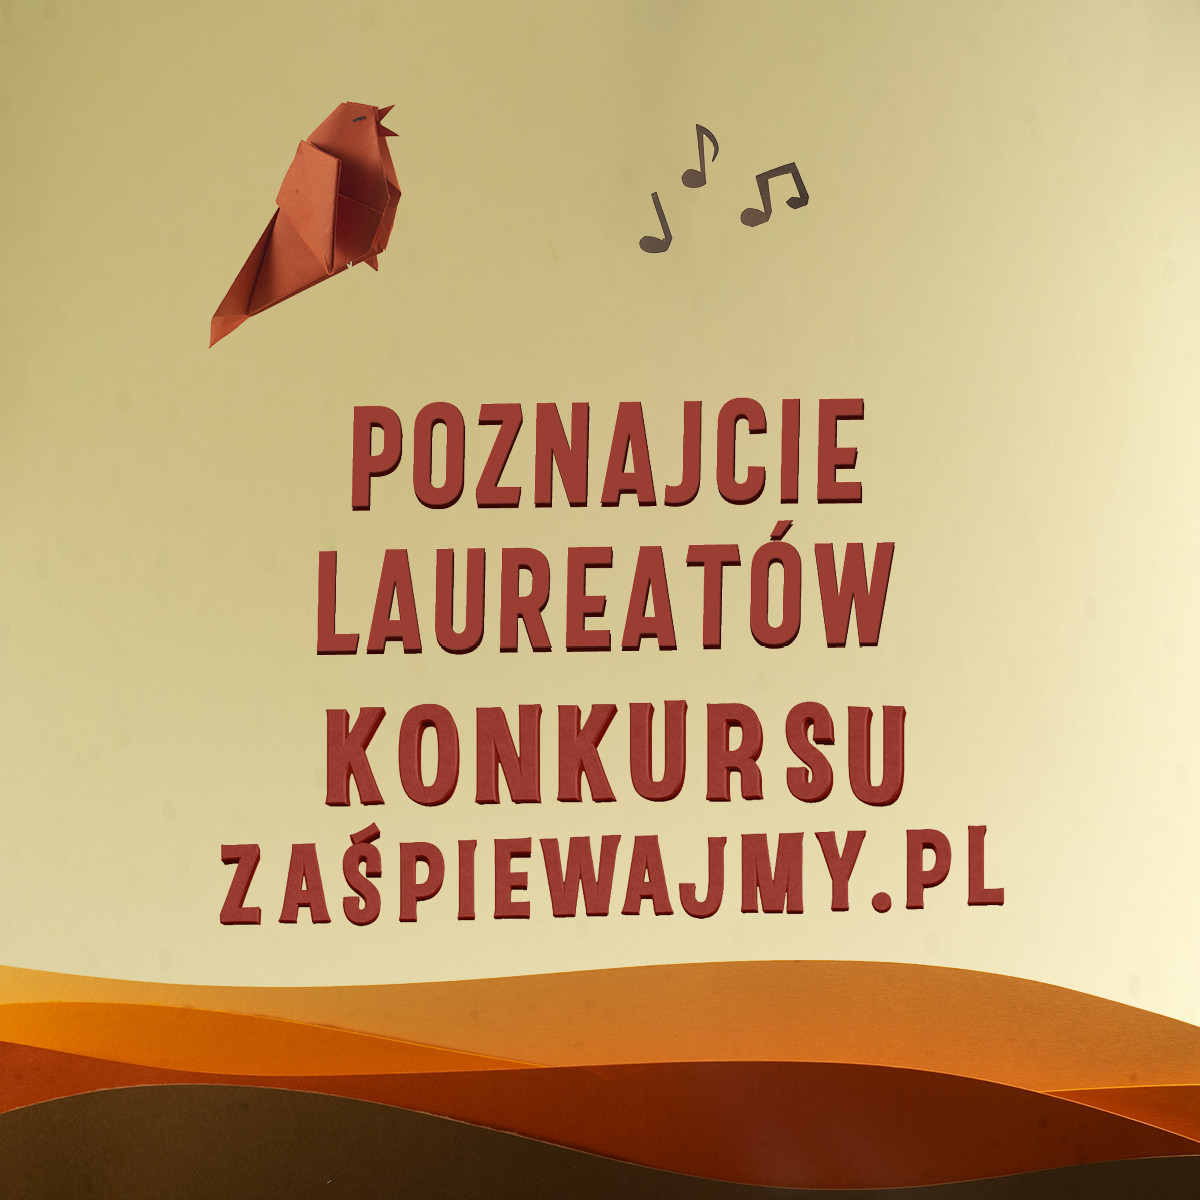 Ogłaszamy zwycięzców konkursu Zaśpiewajmy.pl!